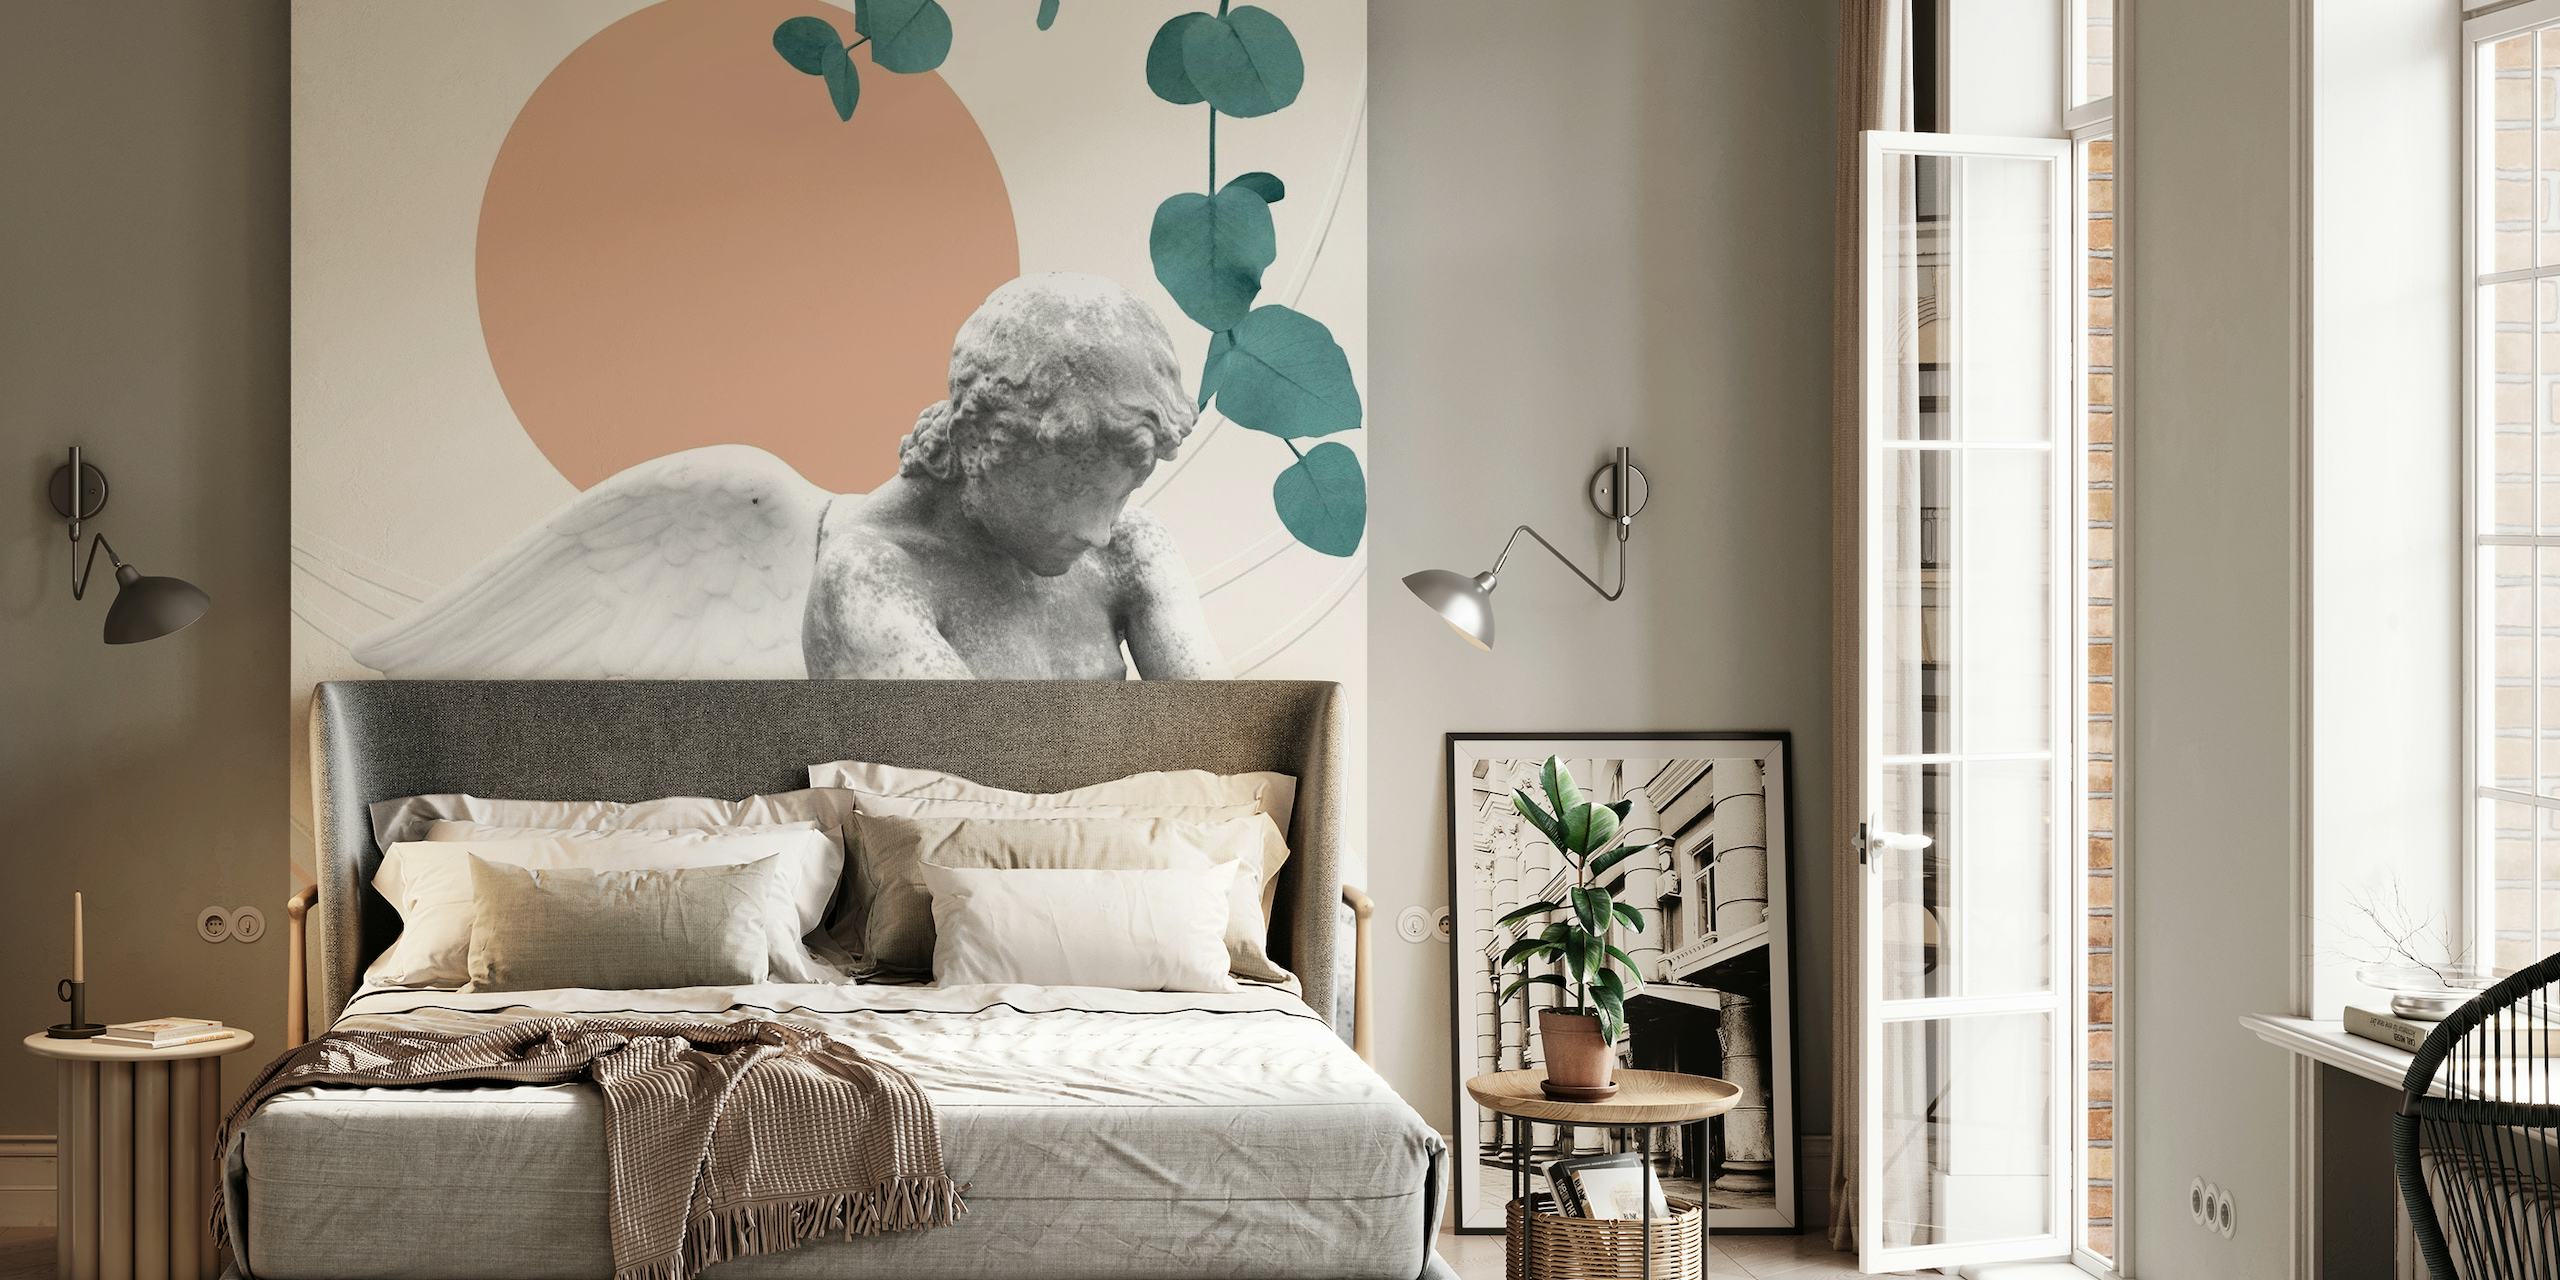 Mural de parede Eros Abstract Finesse com querubins, texturas de mármore, formas geométricas e elementos botânicos.